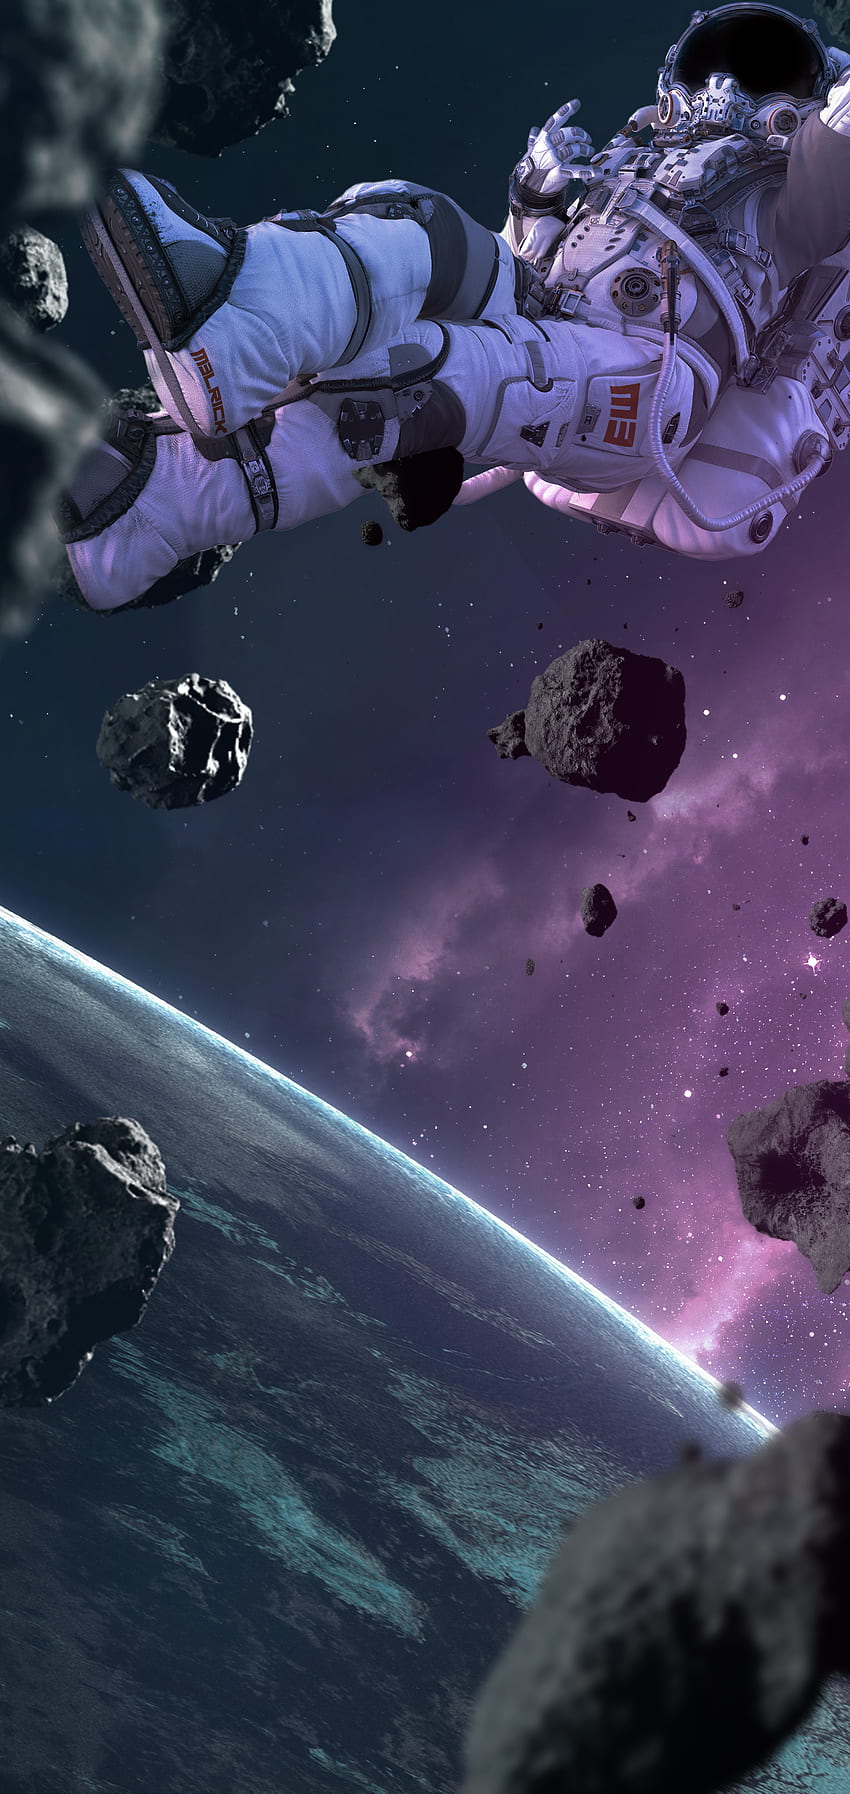 Flotando en el espacio Galaxy S10 Perforadora, astronauta flotando en el espacio fondo de pantalla del teléfono